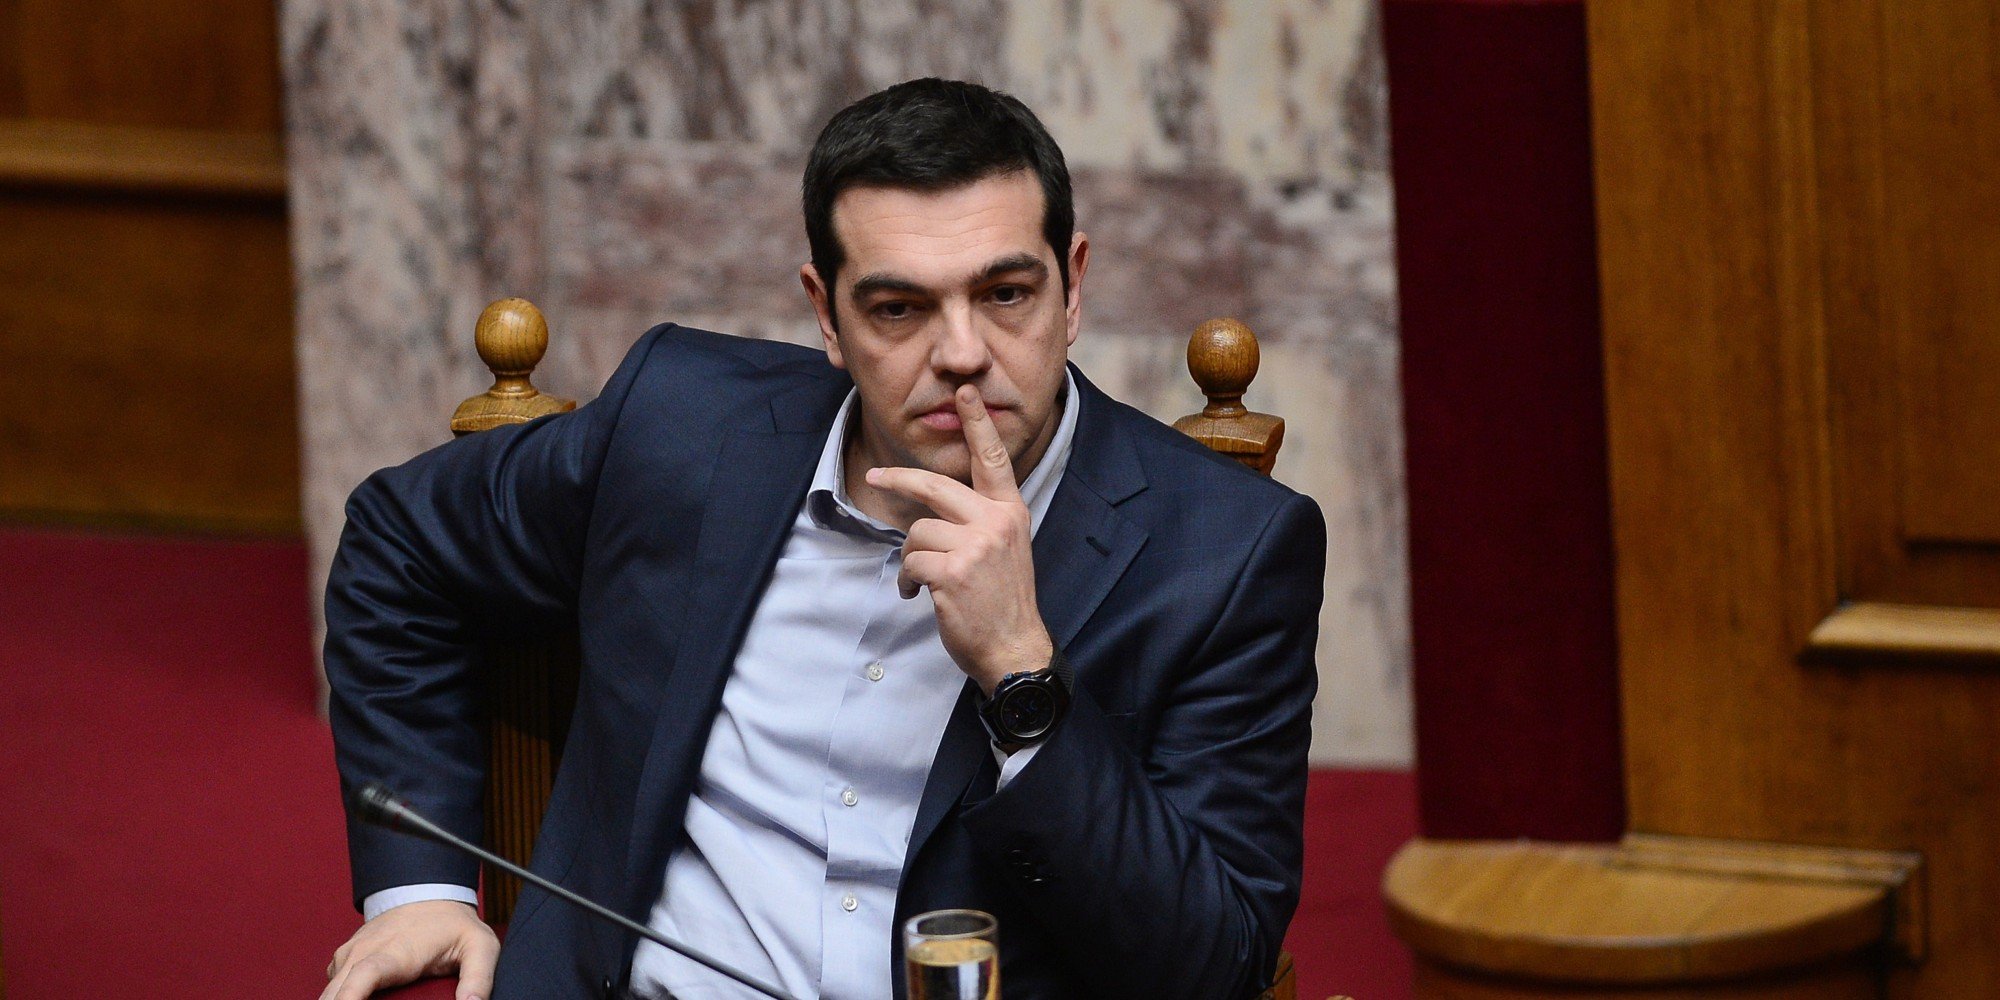 Τσίπρας: «Εγώ θα κάνω δημοψήφισμα για να το κερδίσω», είπε στους συνεργάτες του ο πρωθυπουργός